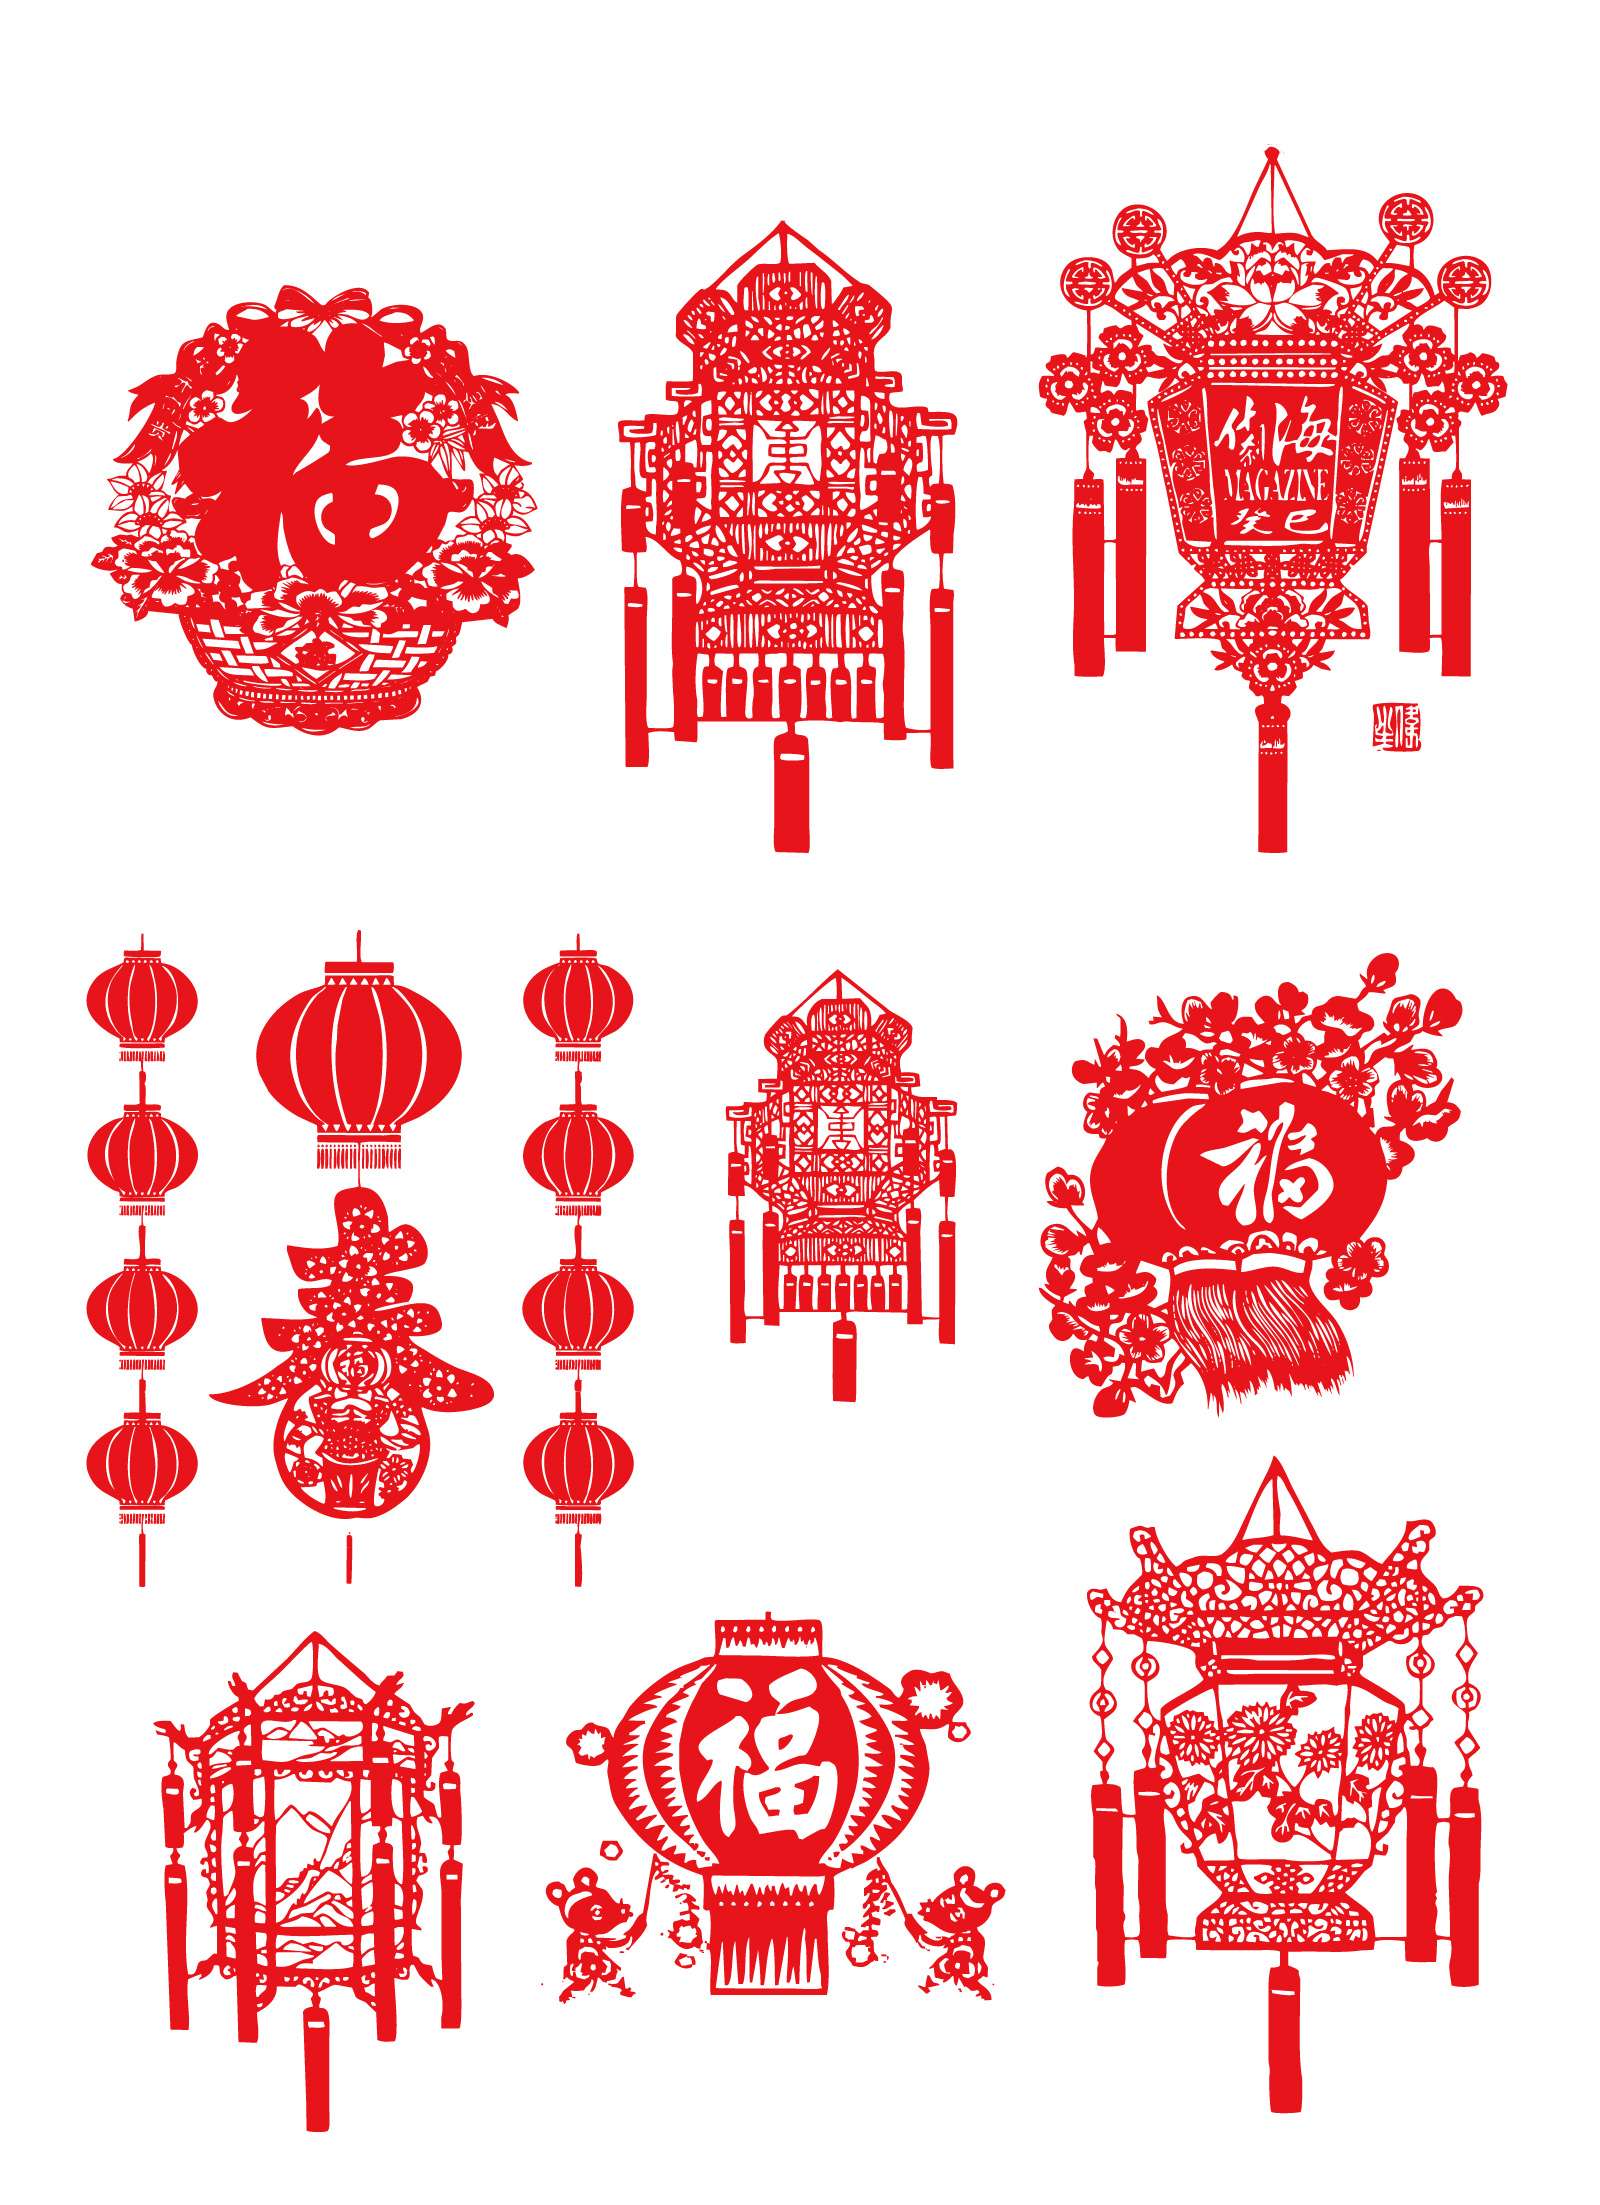 10 Spring Festival Lantern Festival paper-cut vector diagram  Illustrations Vectors AI ESP